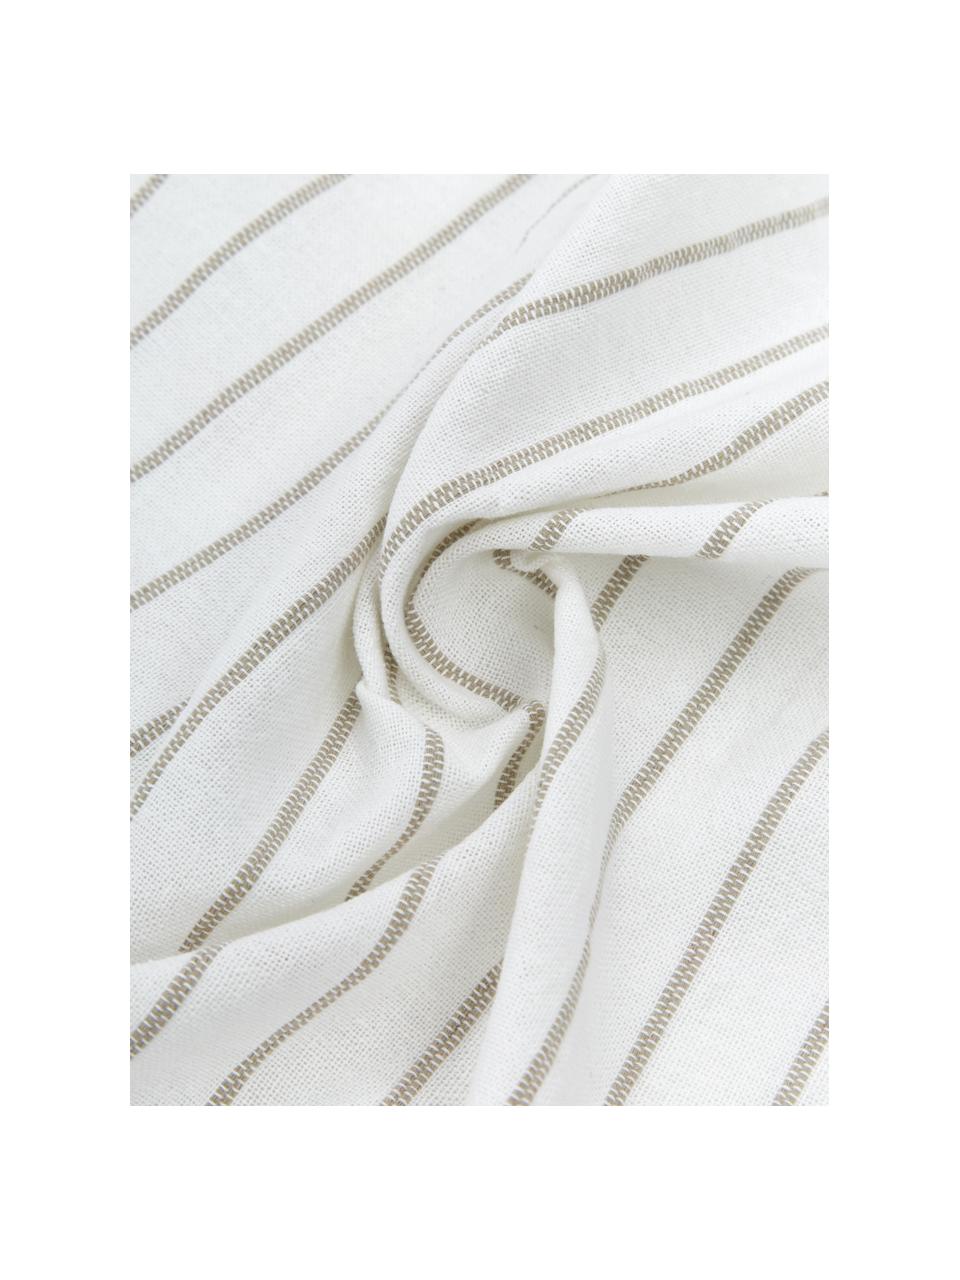 Lekki koc bawełniany z frędzlami Monica, 100% bawełna, Beżowy, biały, S 125 x D 150 cm